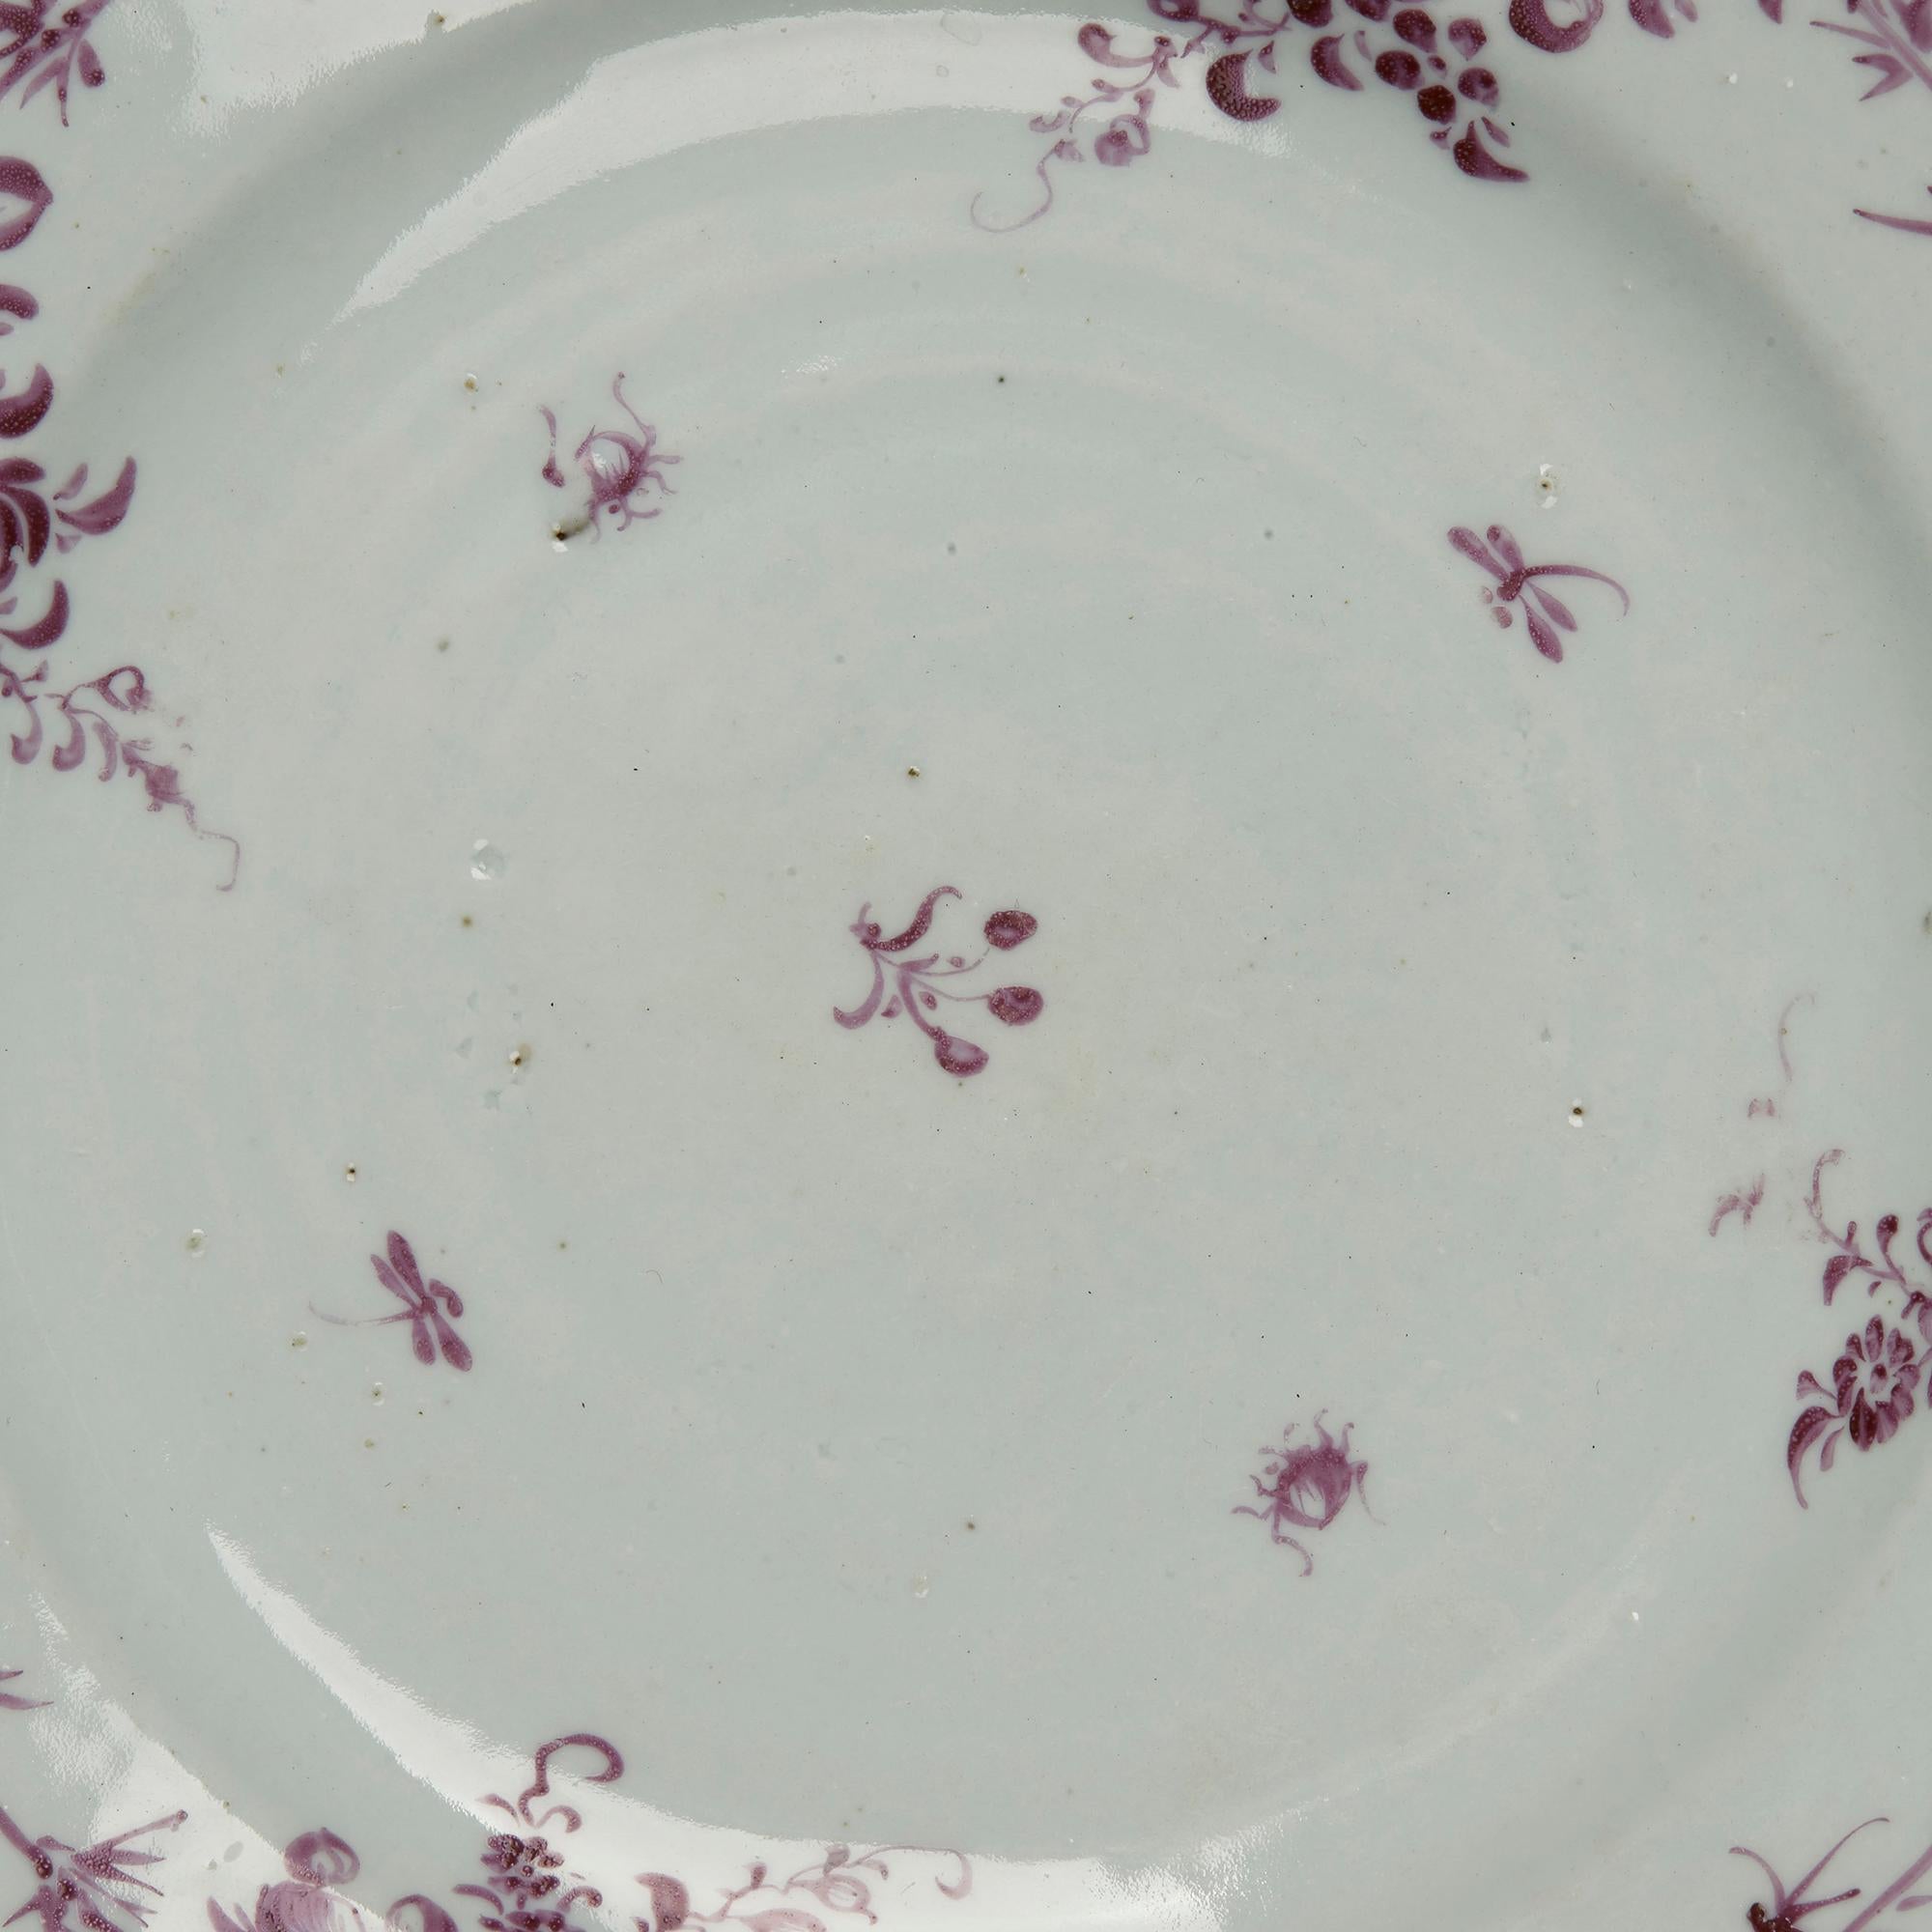 Une rare et inhabituelle assiette en porcelaine chinoise Qianlong décorée à la main en puce avec une bordure florale et avec de petits insectes autour d'un motif floral central. L'assiette a un bord taché et possède diverses étiquettes en papier à